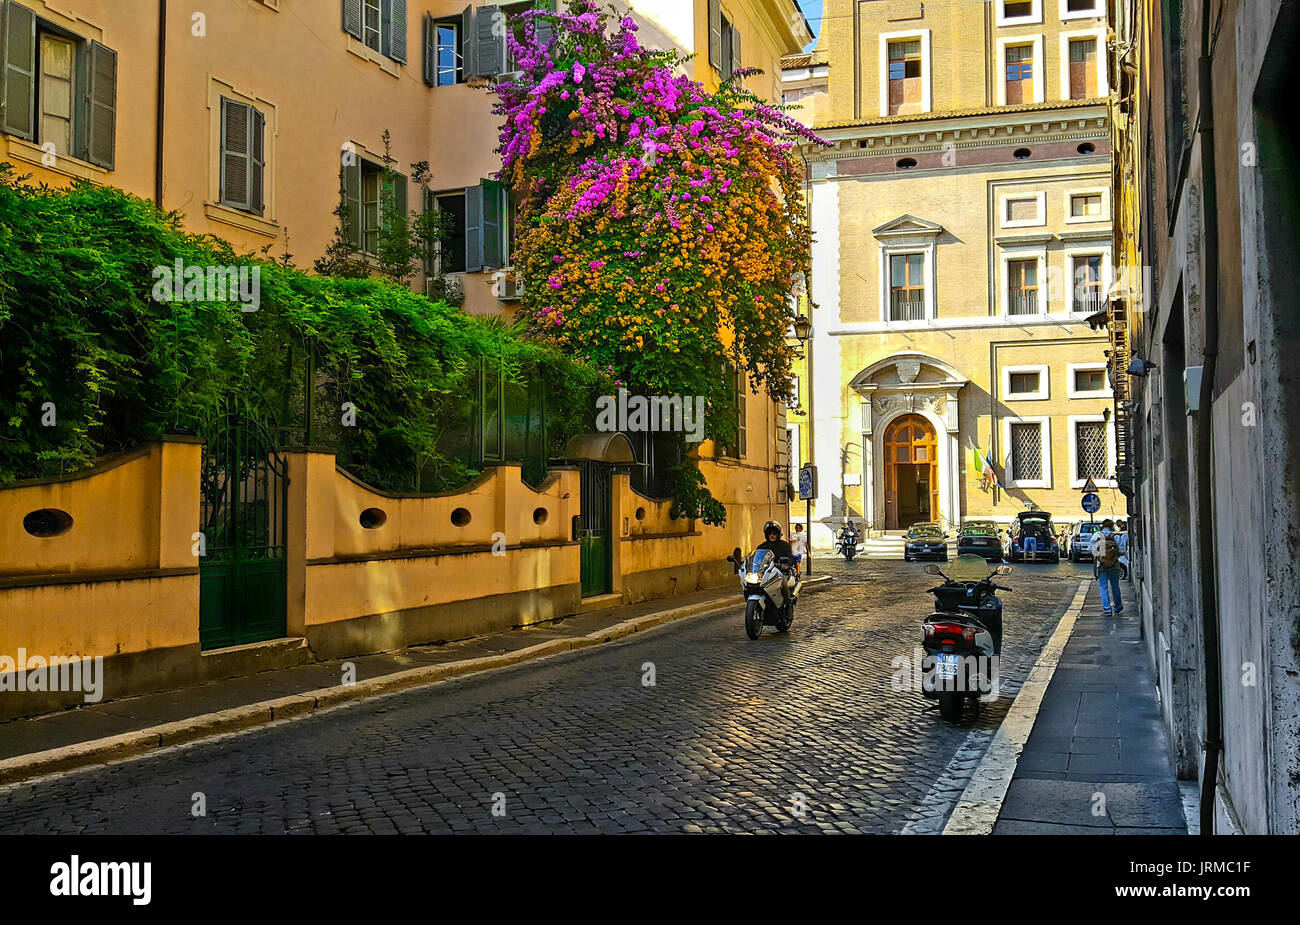 Rue de Rome avec un bougainvilliers colorés avec des fleurs rose et orange sur le côté d'un immeuble avec une moto et un solo traveler Banque D'Images